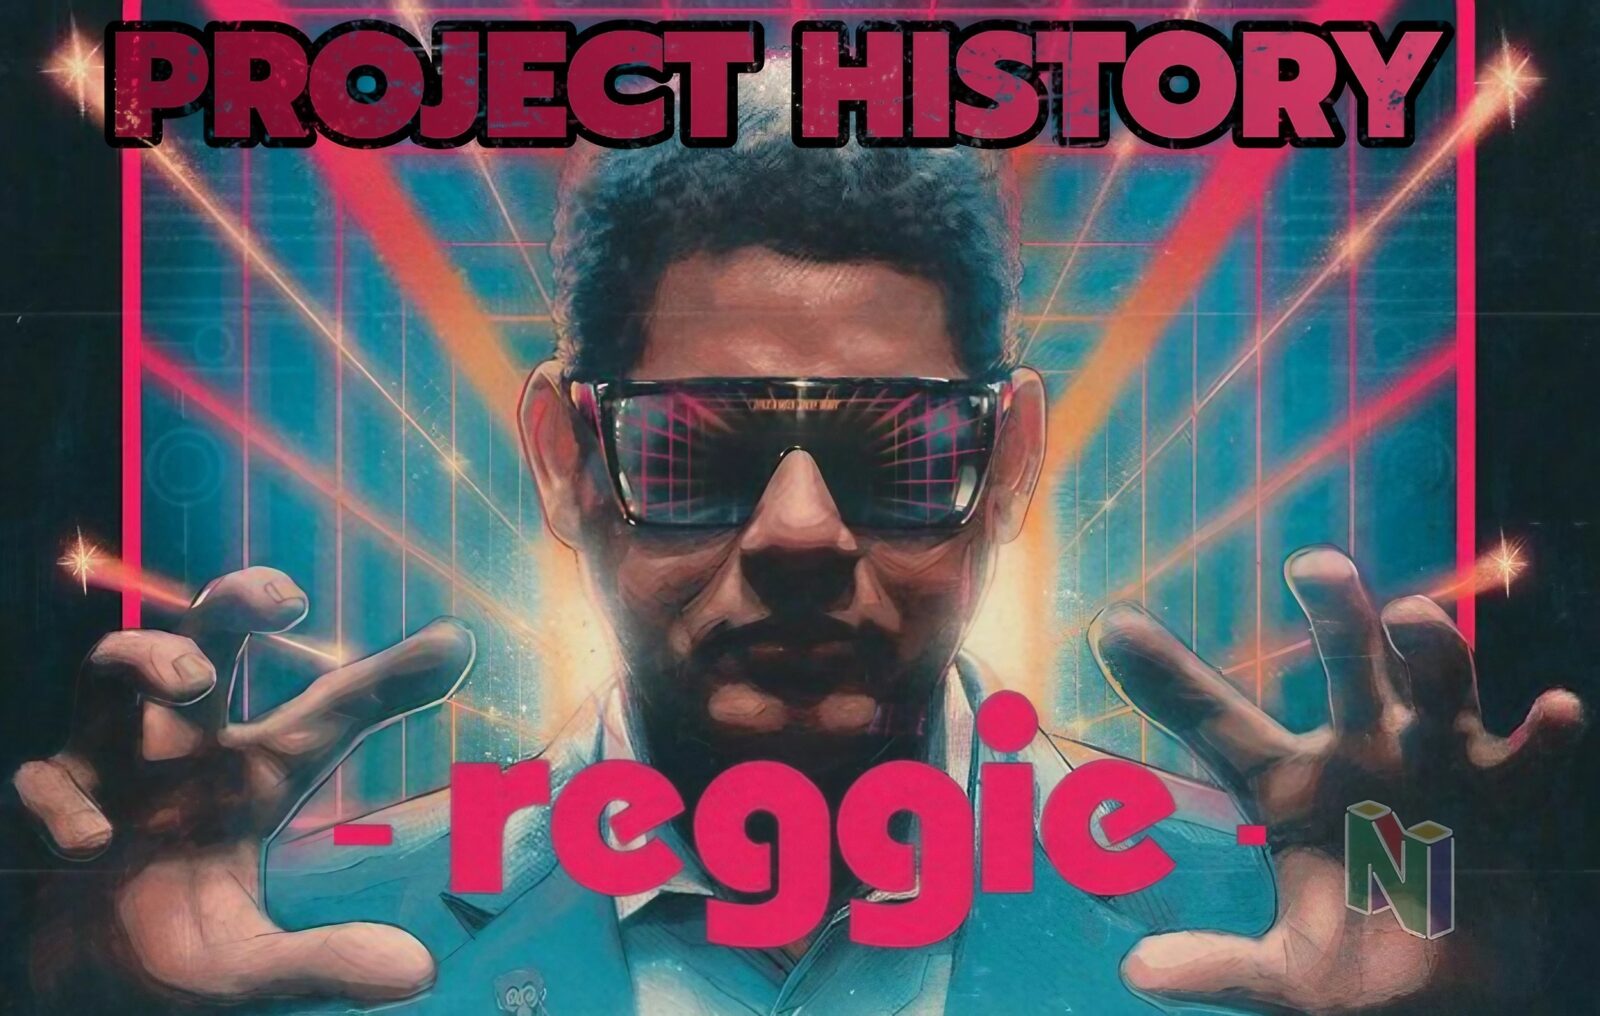 Reggie Fils-Aimé